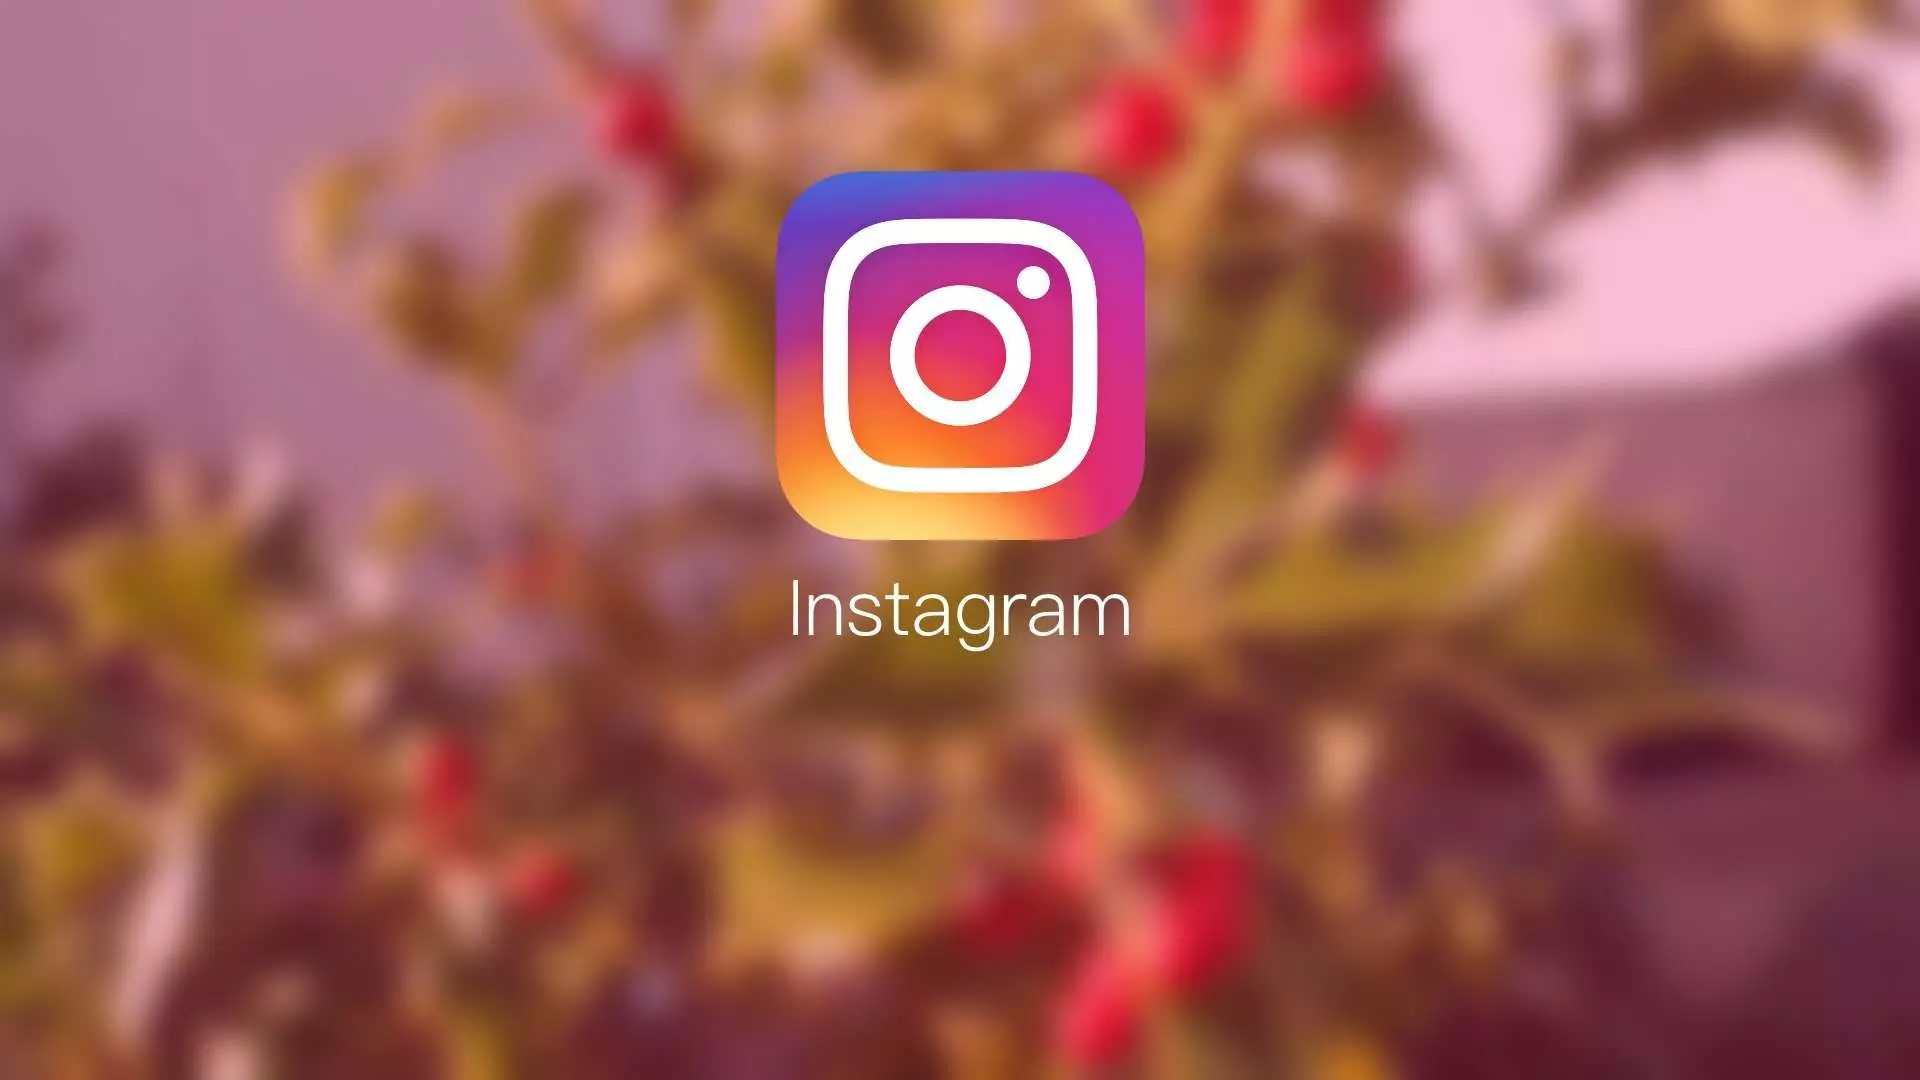 Kapanan Instagram hesabı açma yöntemleri